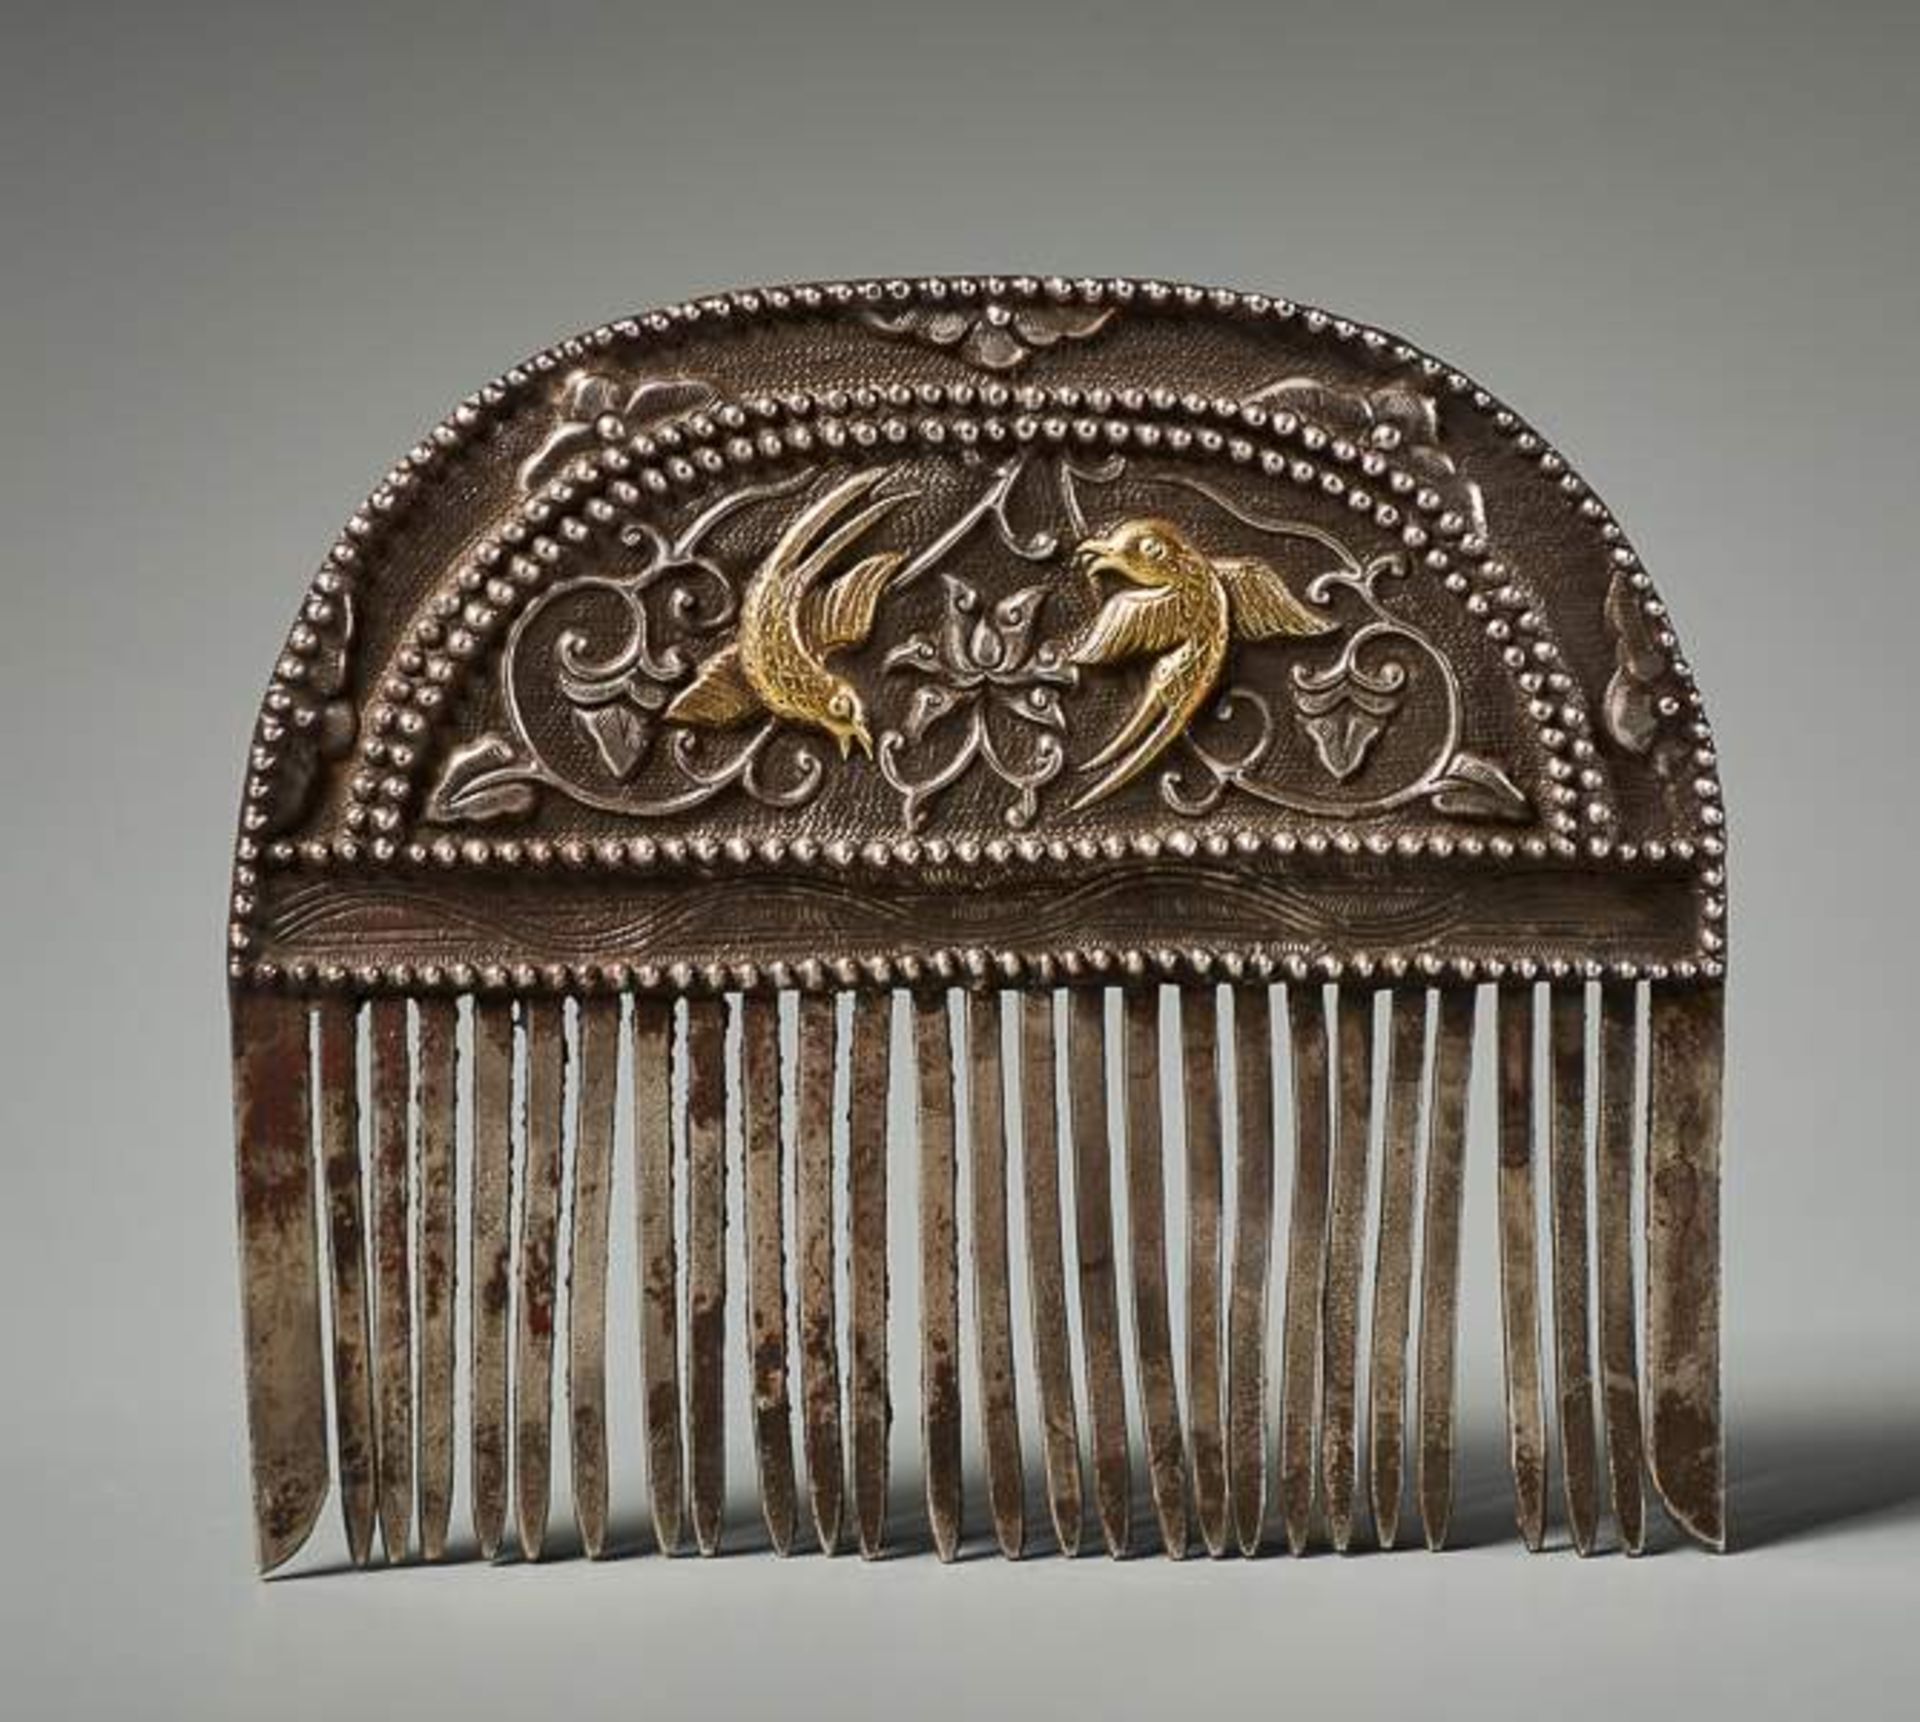 KAMM MIT BLÜTEN UND VOGELDEKOR Silber-Repoussé mit Vergoldung. China, vermutlich Tang-Dynastie ( - Bild 2 aus 4